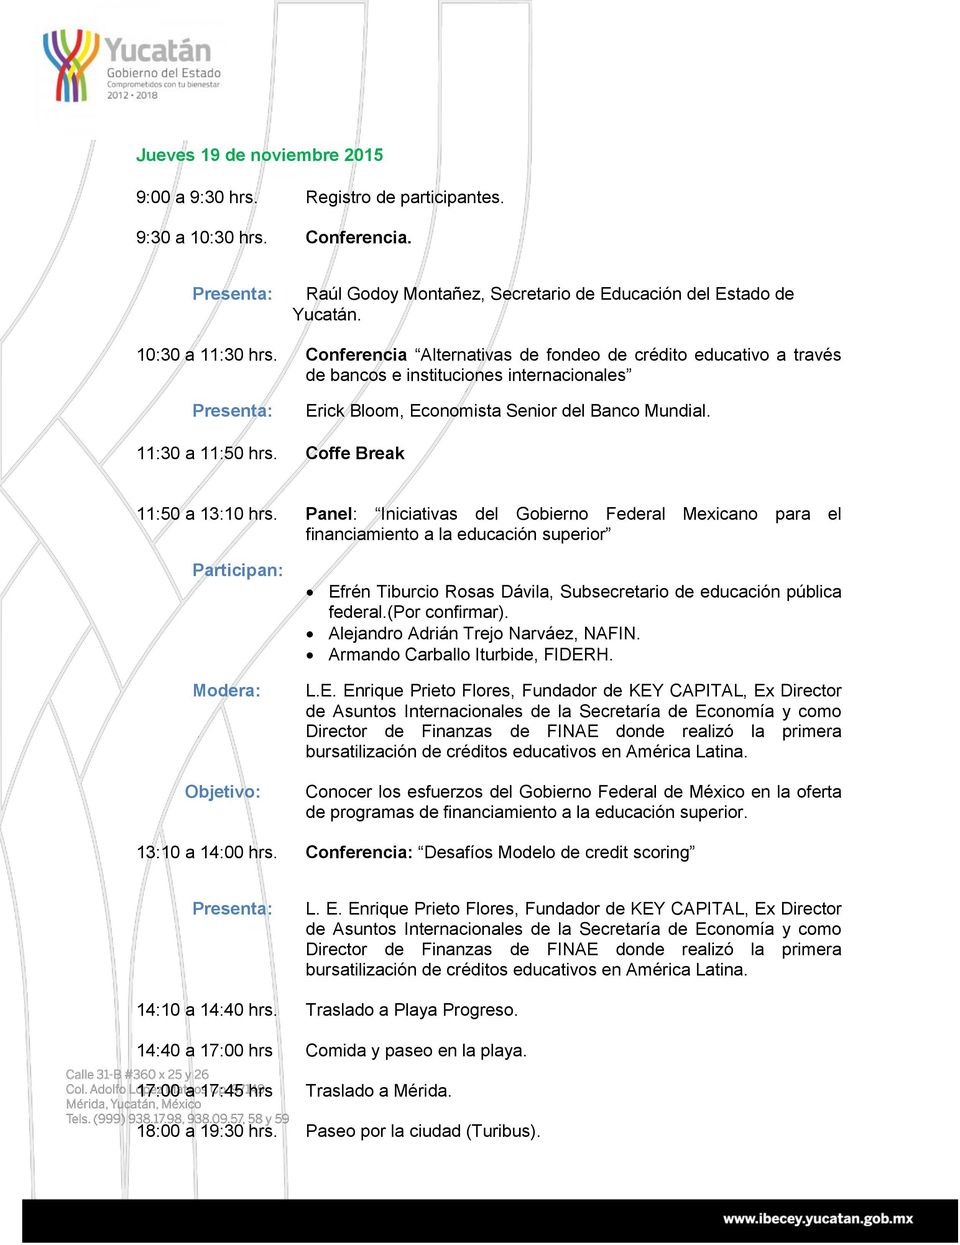 Coffe Break 11:50 a 13:10 hrs. Panel: Iniciativas del Gobierno Federal Mexicano para el financiamiento a la educación superior Efrén Tiburcio Rosas Dávila, Subsecretario de educación pública federal.